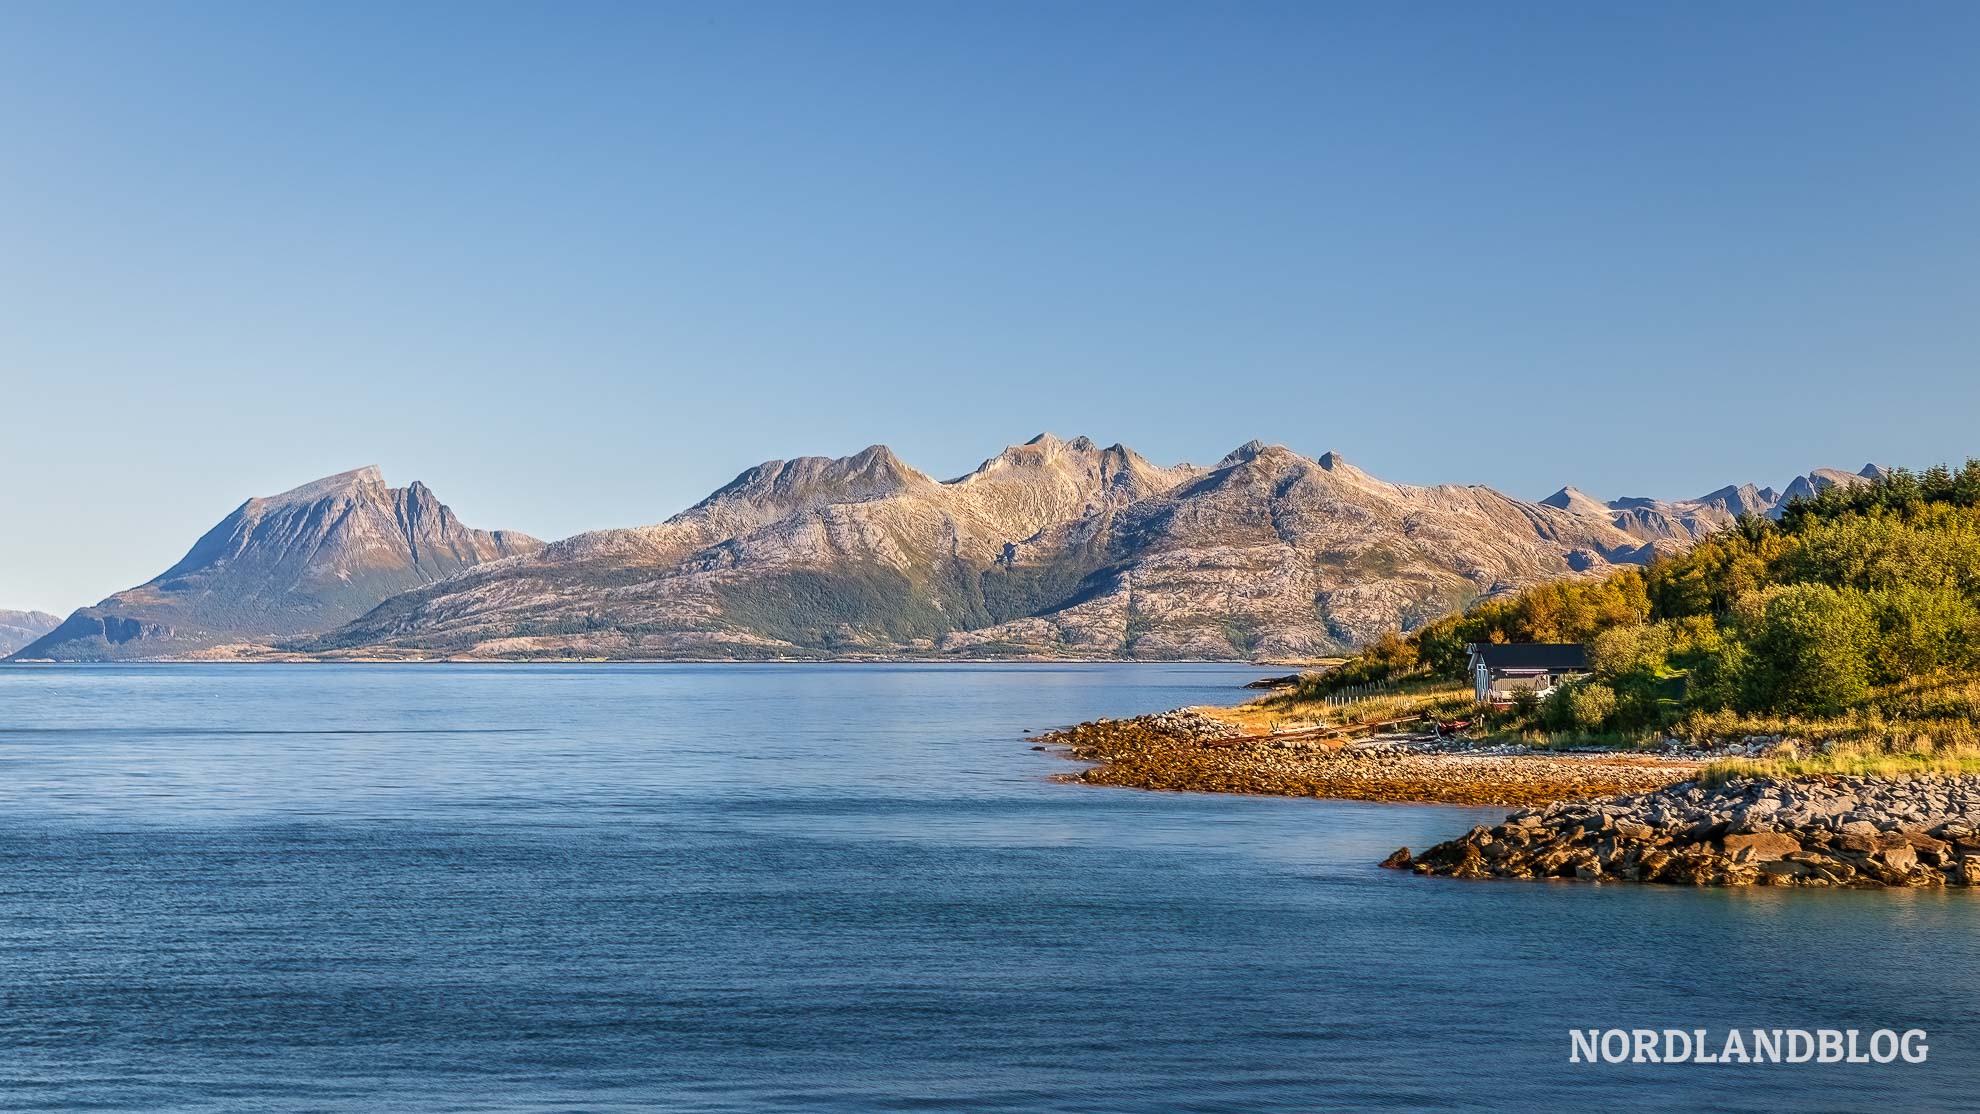 Fährüberfahrt nach Tomma mit Blick auf die Helgelandskysten